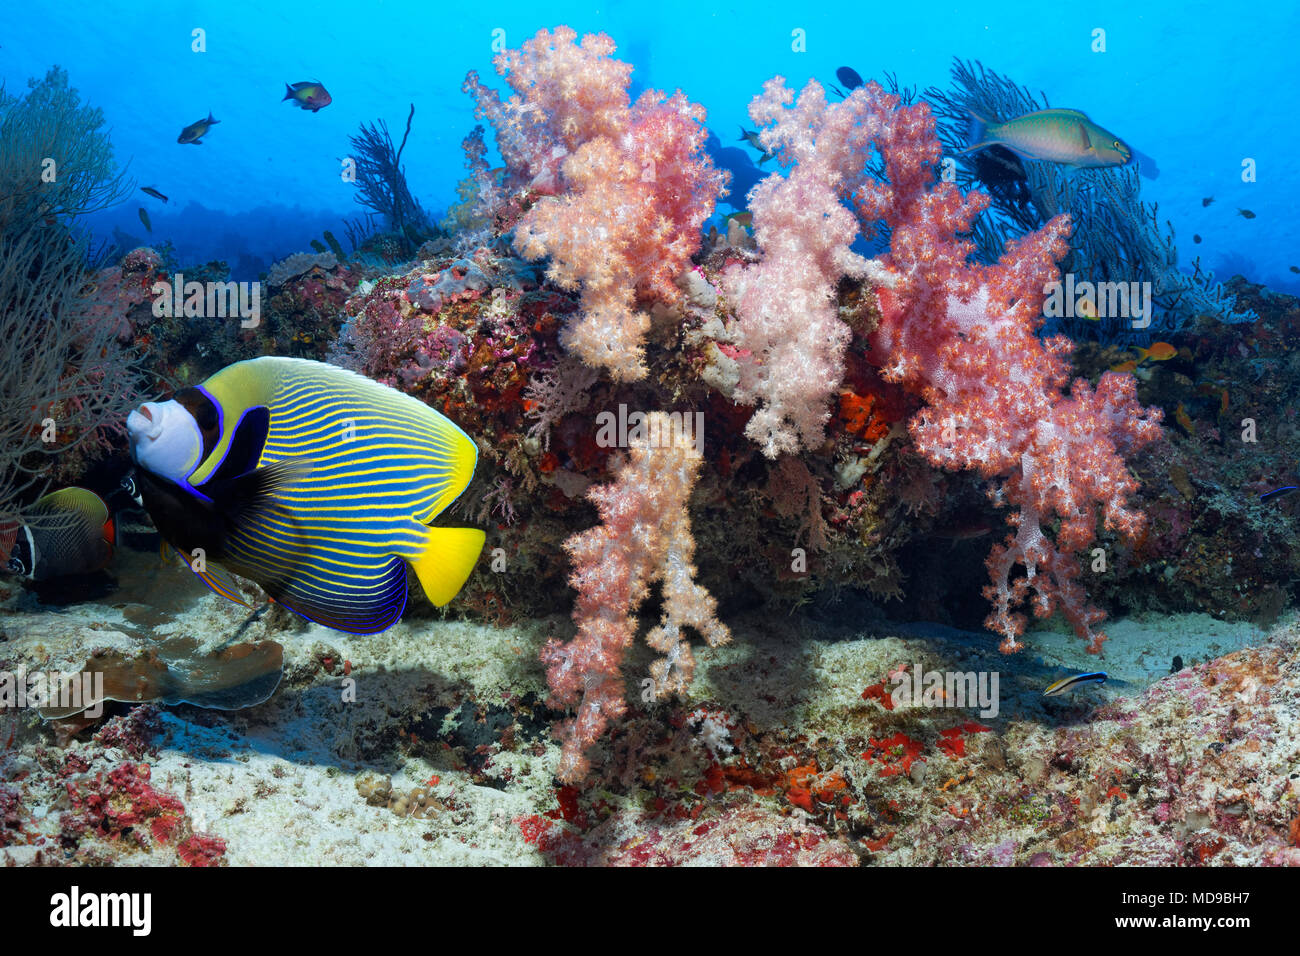 Poissons ange empereur (Pomacanthus imperator) nage en face d'un récif de corail avec les coraux mous (Alcyonacea), de l'Océan Indien, les Maldives Banque D'Images